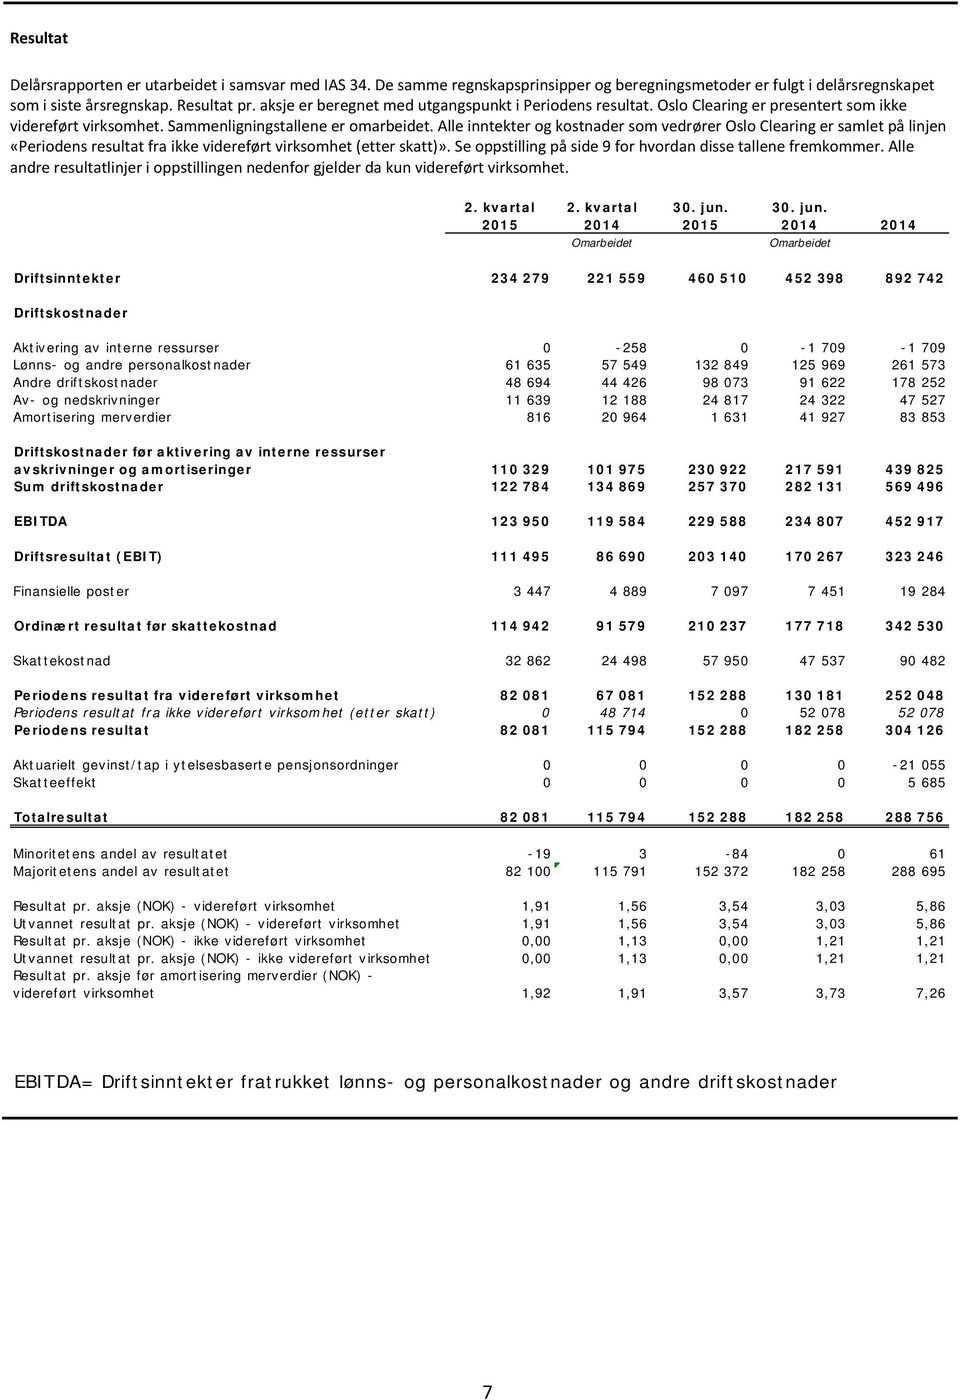 Alle inntekter og kostnader som vedrører Oslo Clearing er samlet på linjen «Periodens resultat fra ikke videreført virksomhet (etter skatt)».